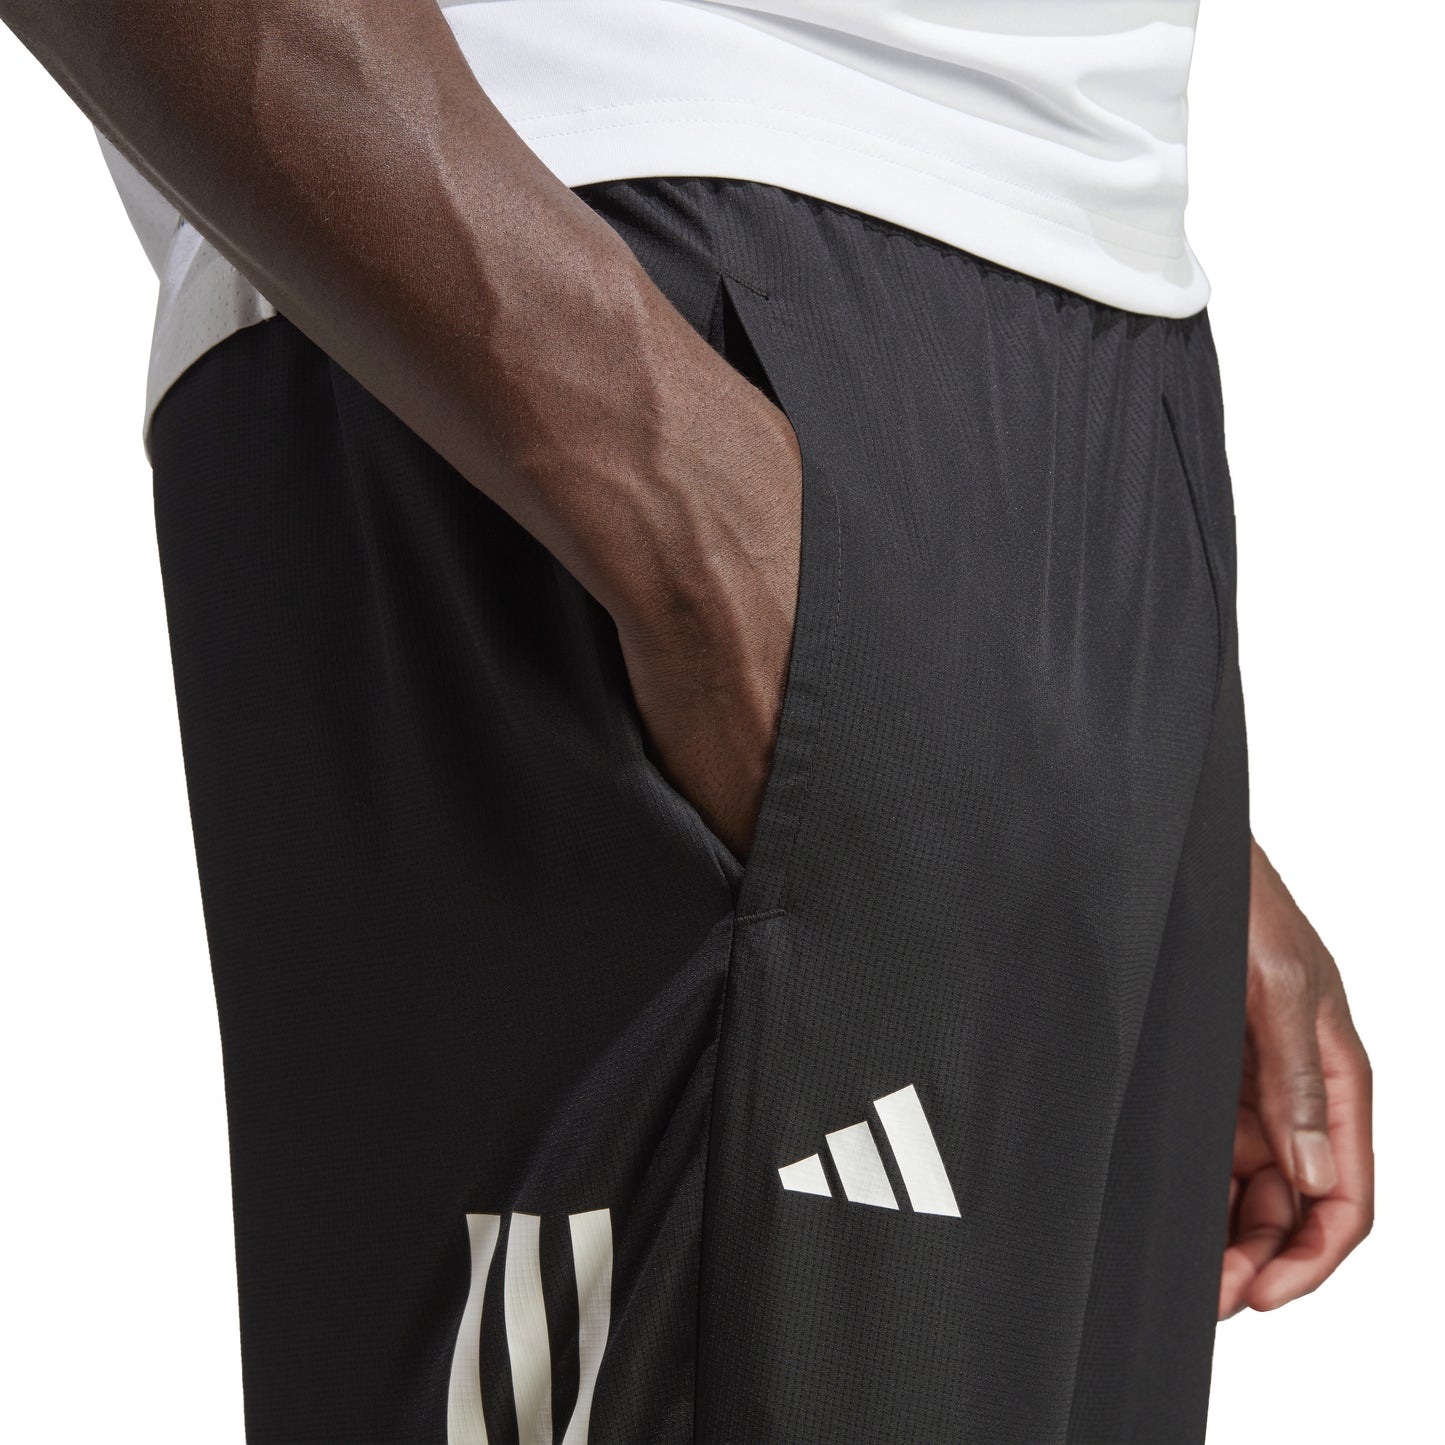 adidas Men's Pants 3-Stripe Woven - Black HT7177